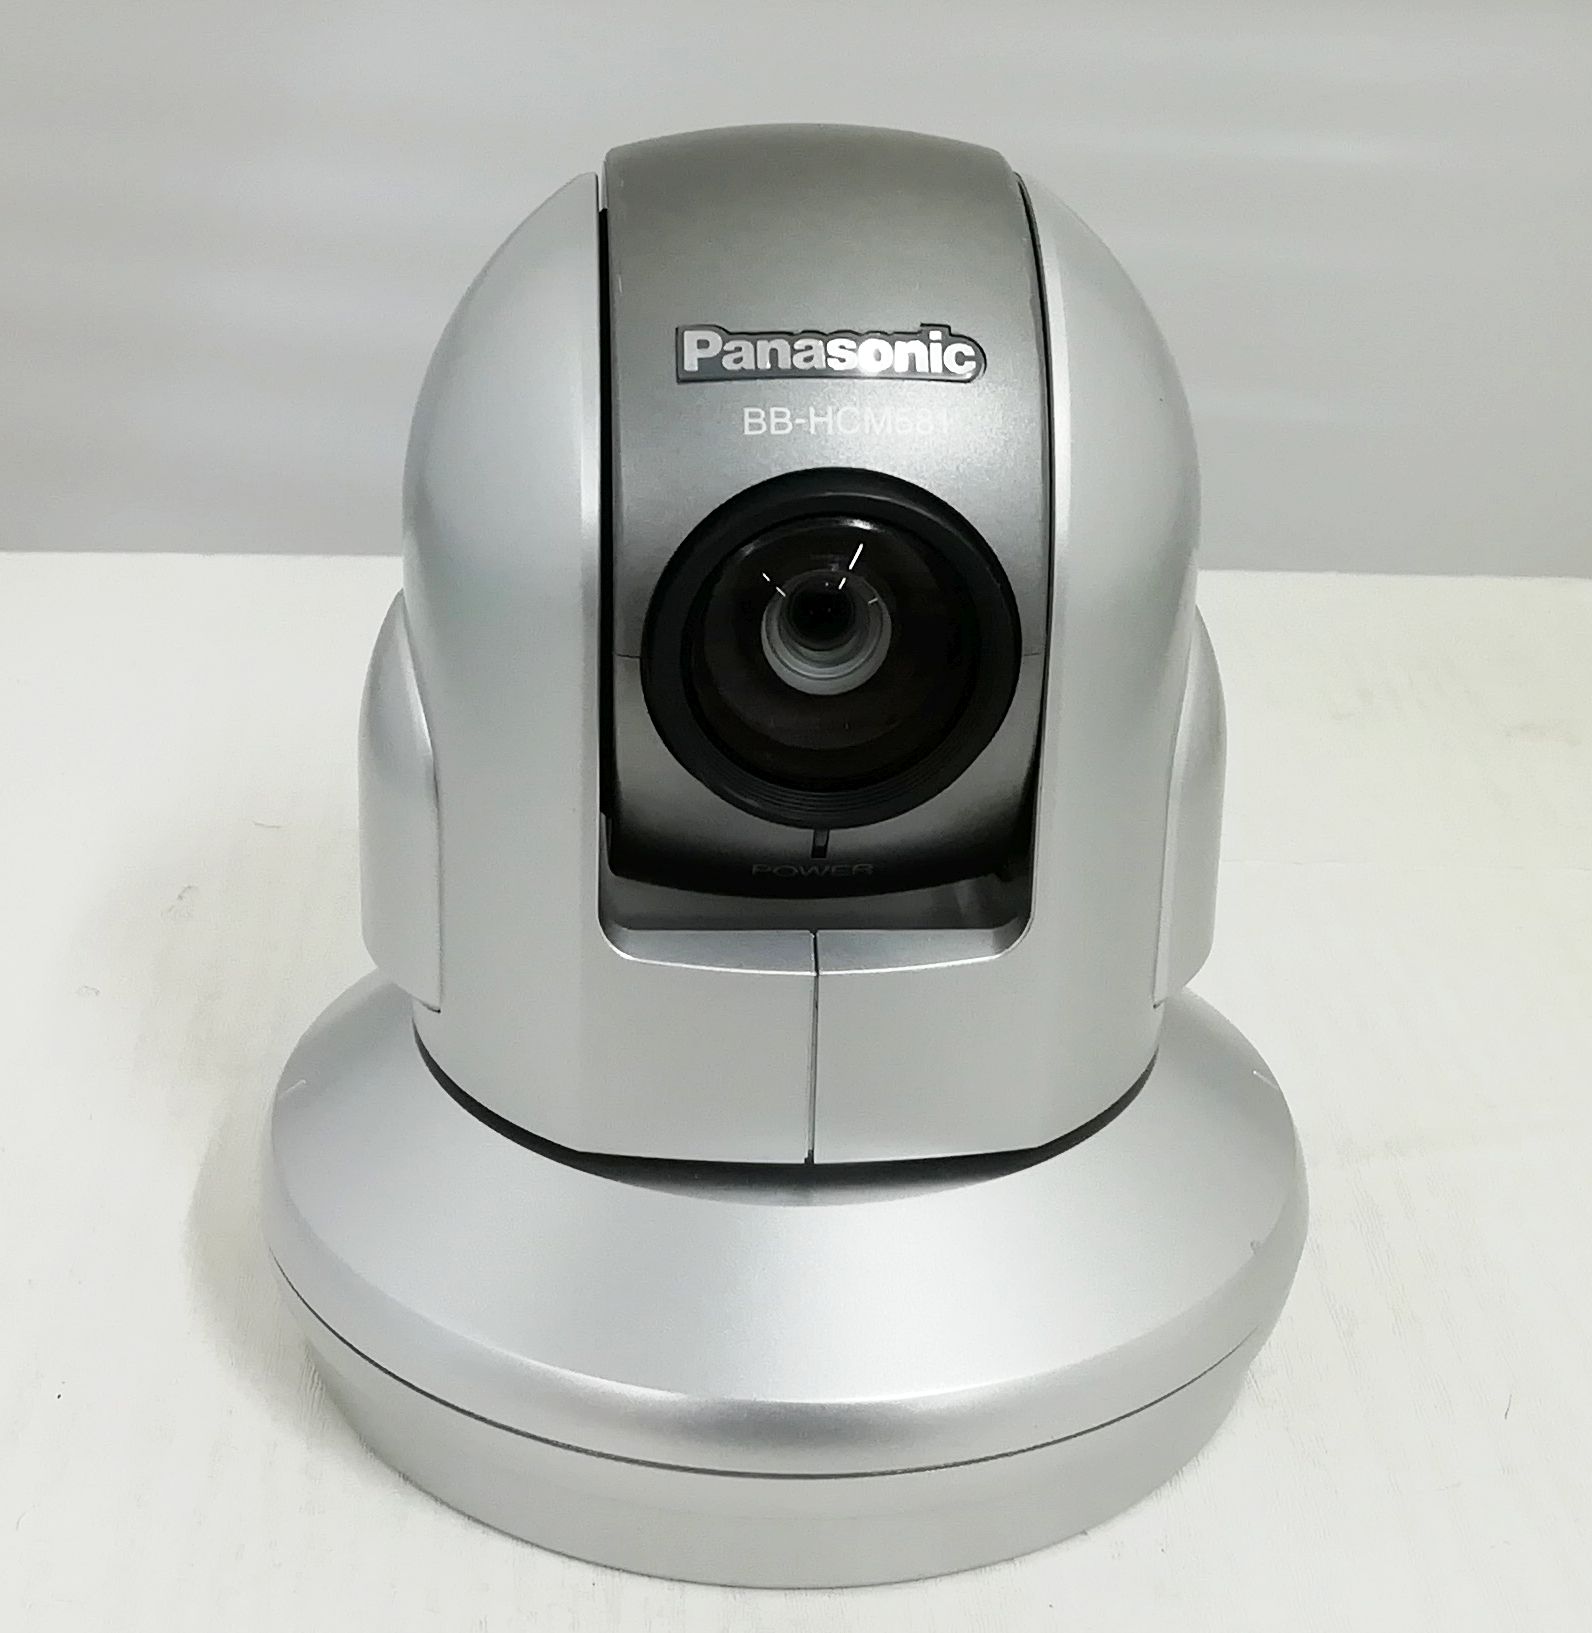 中古品 Panasonic ネットワークカメラ BB-HCM581 - 防犯カメラ